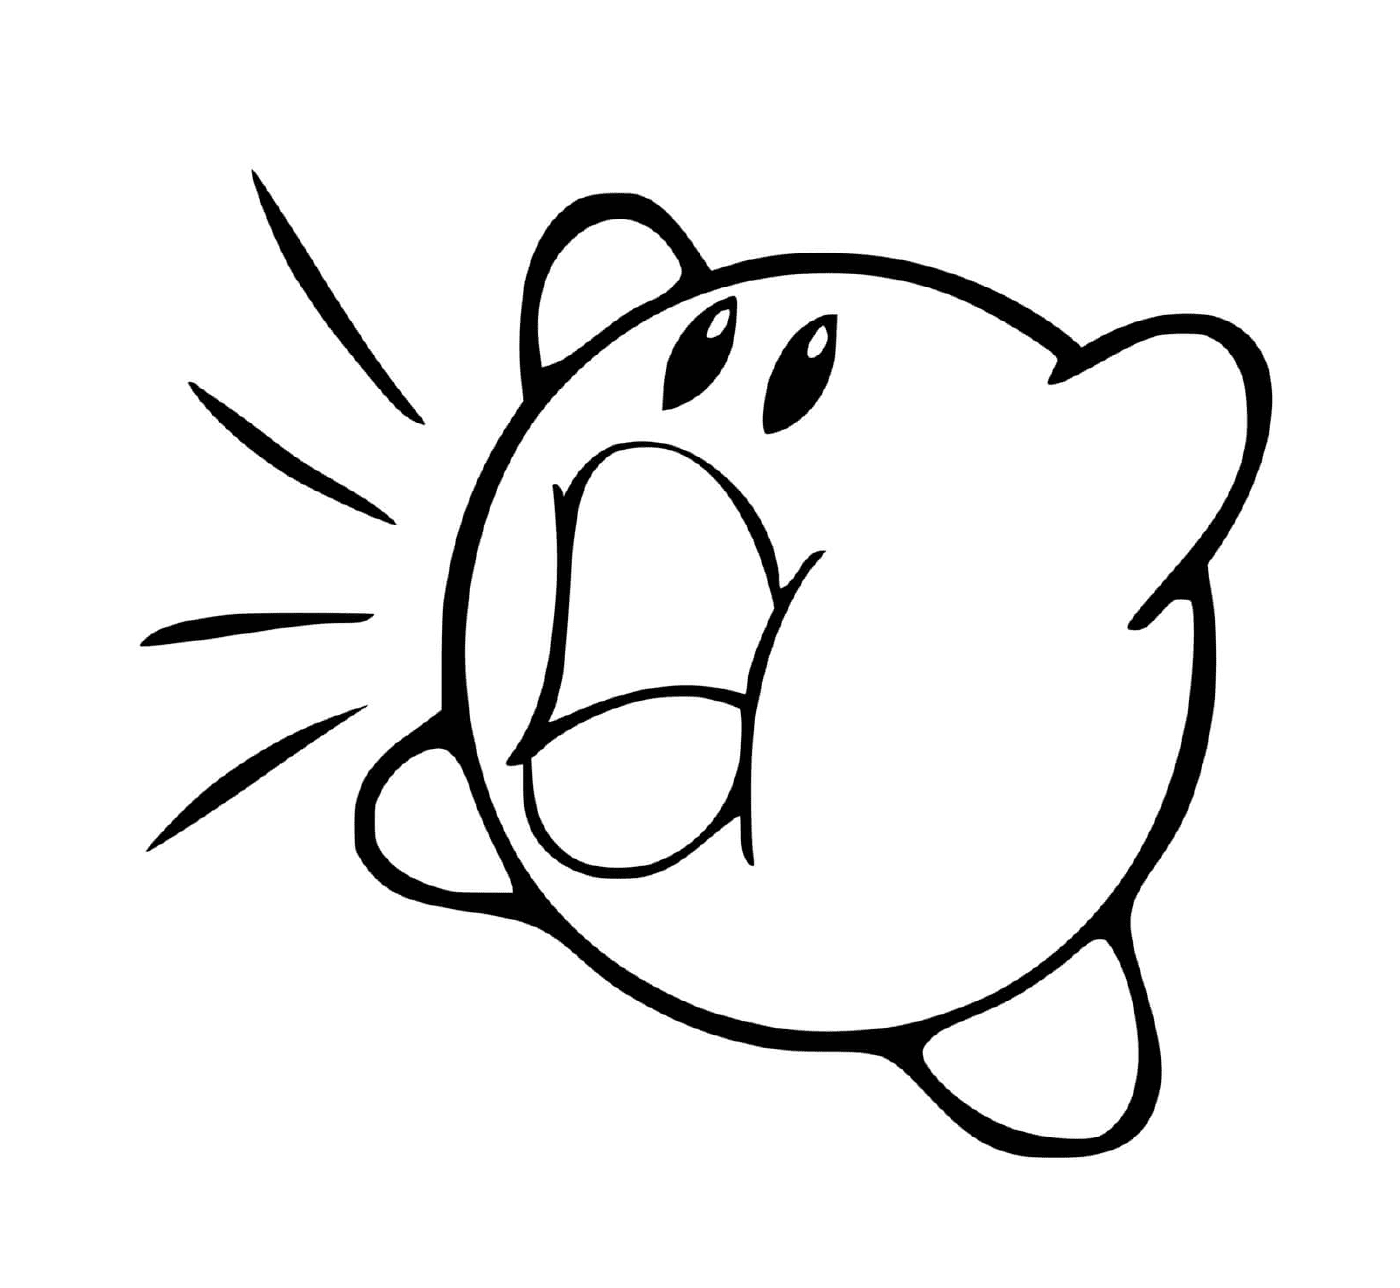  Kirby engole tudo em seu caminho 